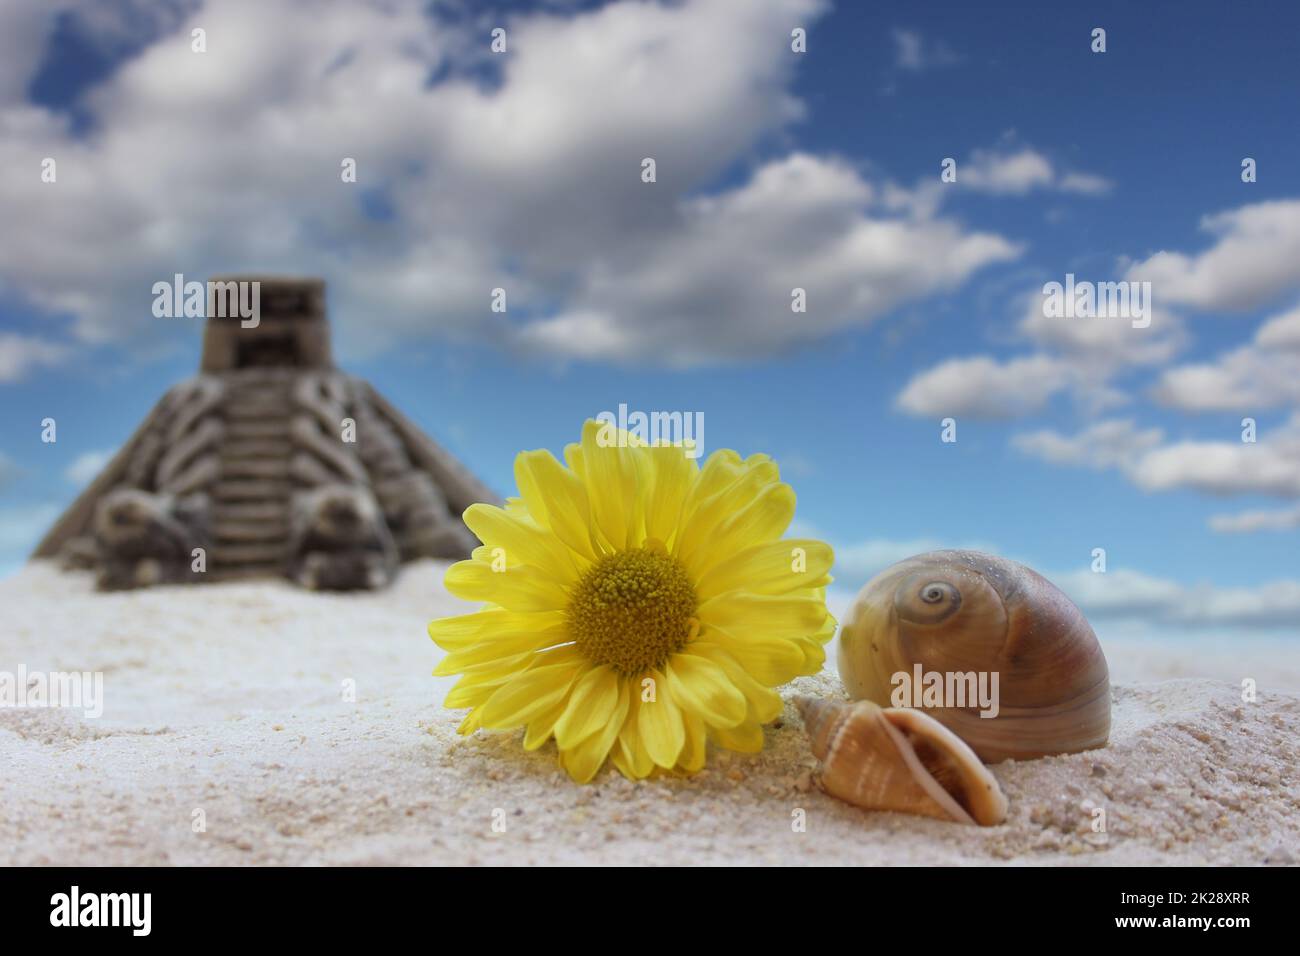 Blume und Seashell auf Sand mit Pyramide im Hintergrund, flacher Freiheitsgrad Stockfoto